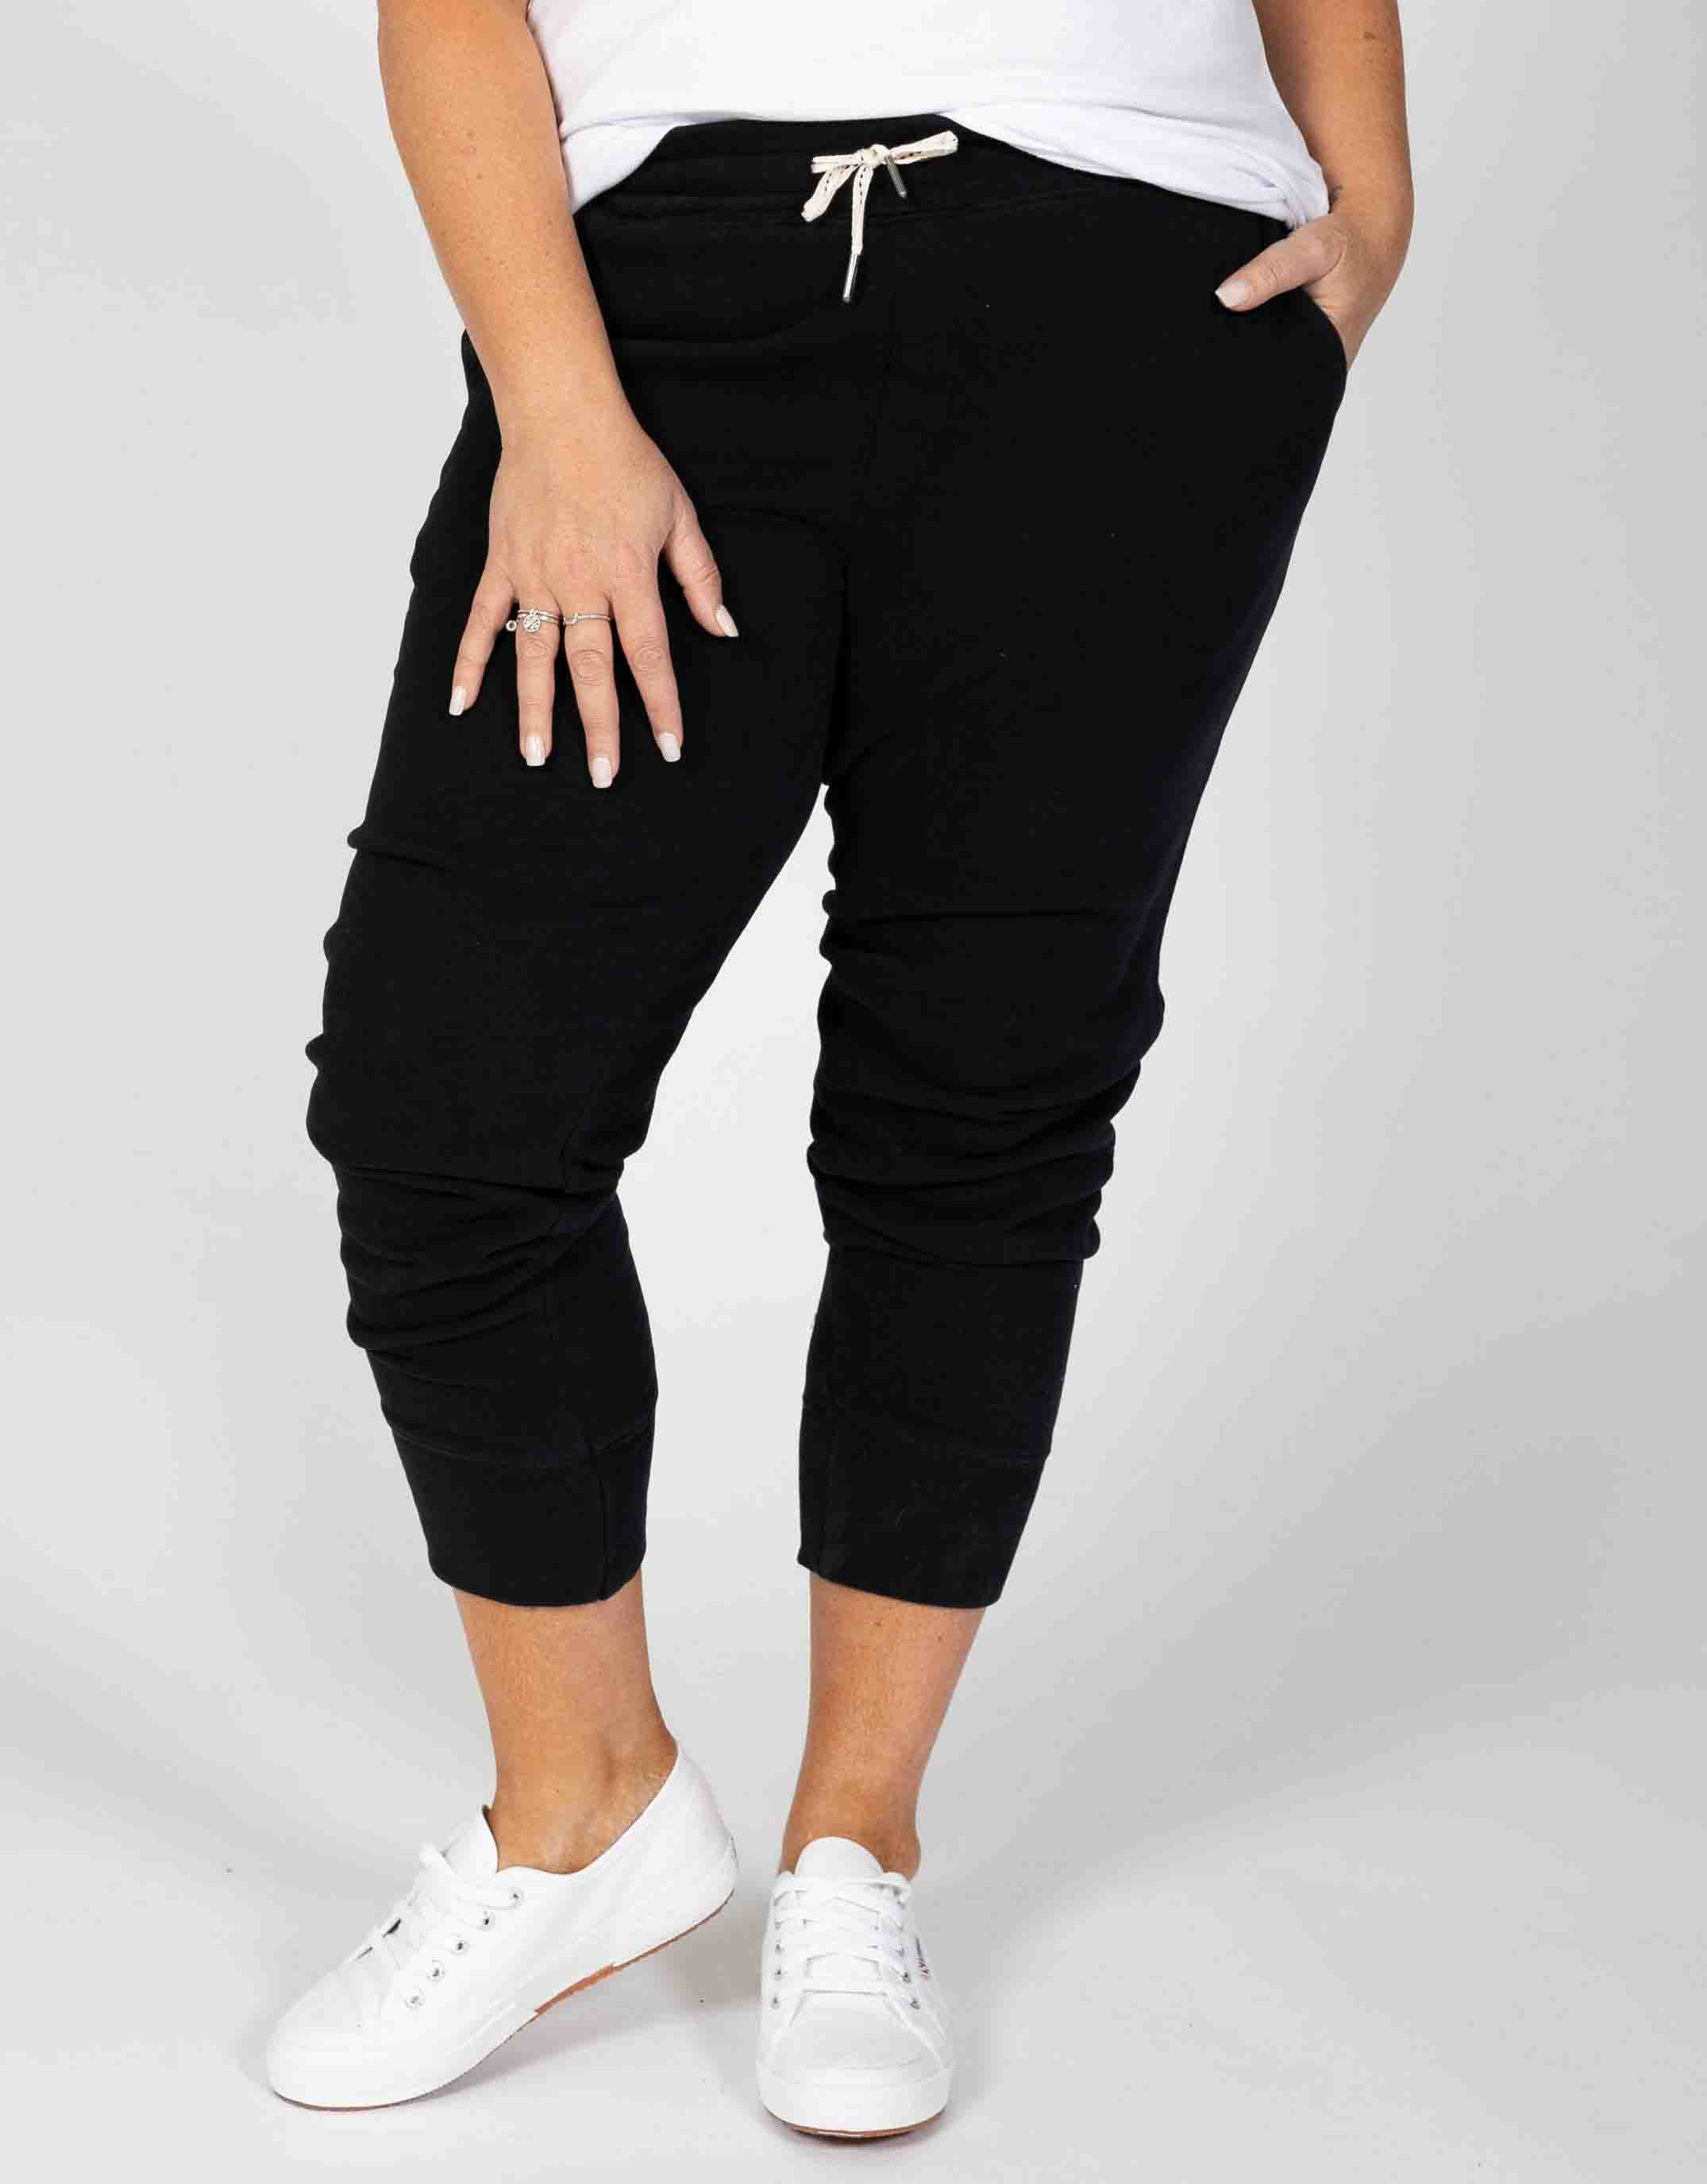 Plus Size 3/4 Brunch Pants - Black Elm Embrace | Plus Size Clothing